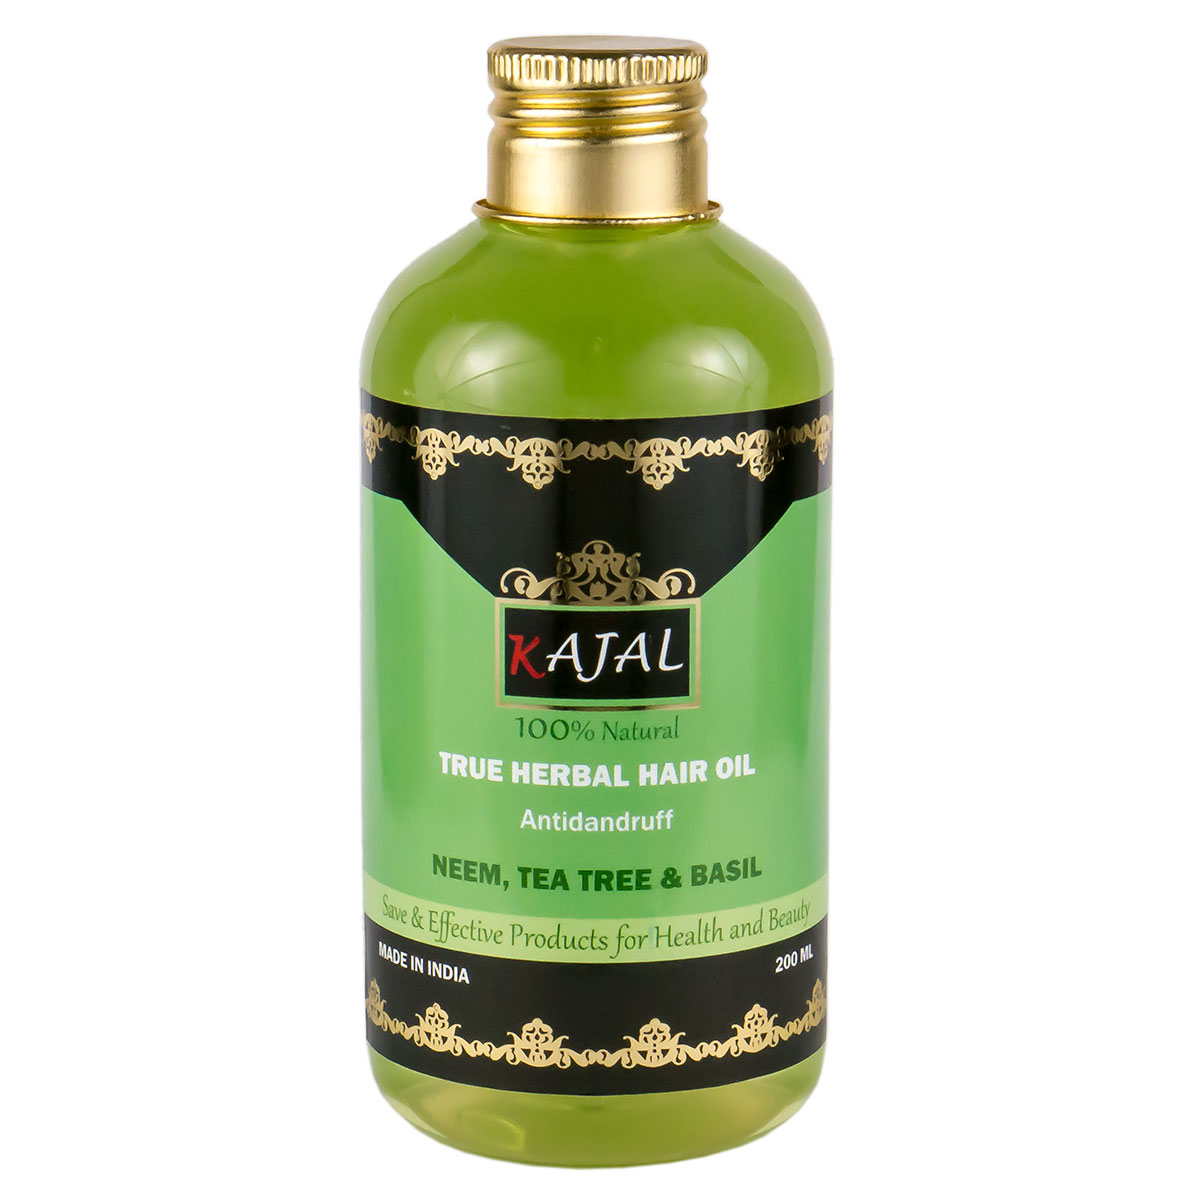 True Herbal Hair Oil  NEEM, TEA TREE & BASIL, Kajal (Травяное масло для волос от перхоти НИМ, ЧАЙНОЕ ДЕРЕВО И БАЗИЛИК, Каджал), 200 мл. - СРОК ГОДНОСТИ ПО ДЕКАБРЬ 2023 ГОДА